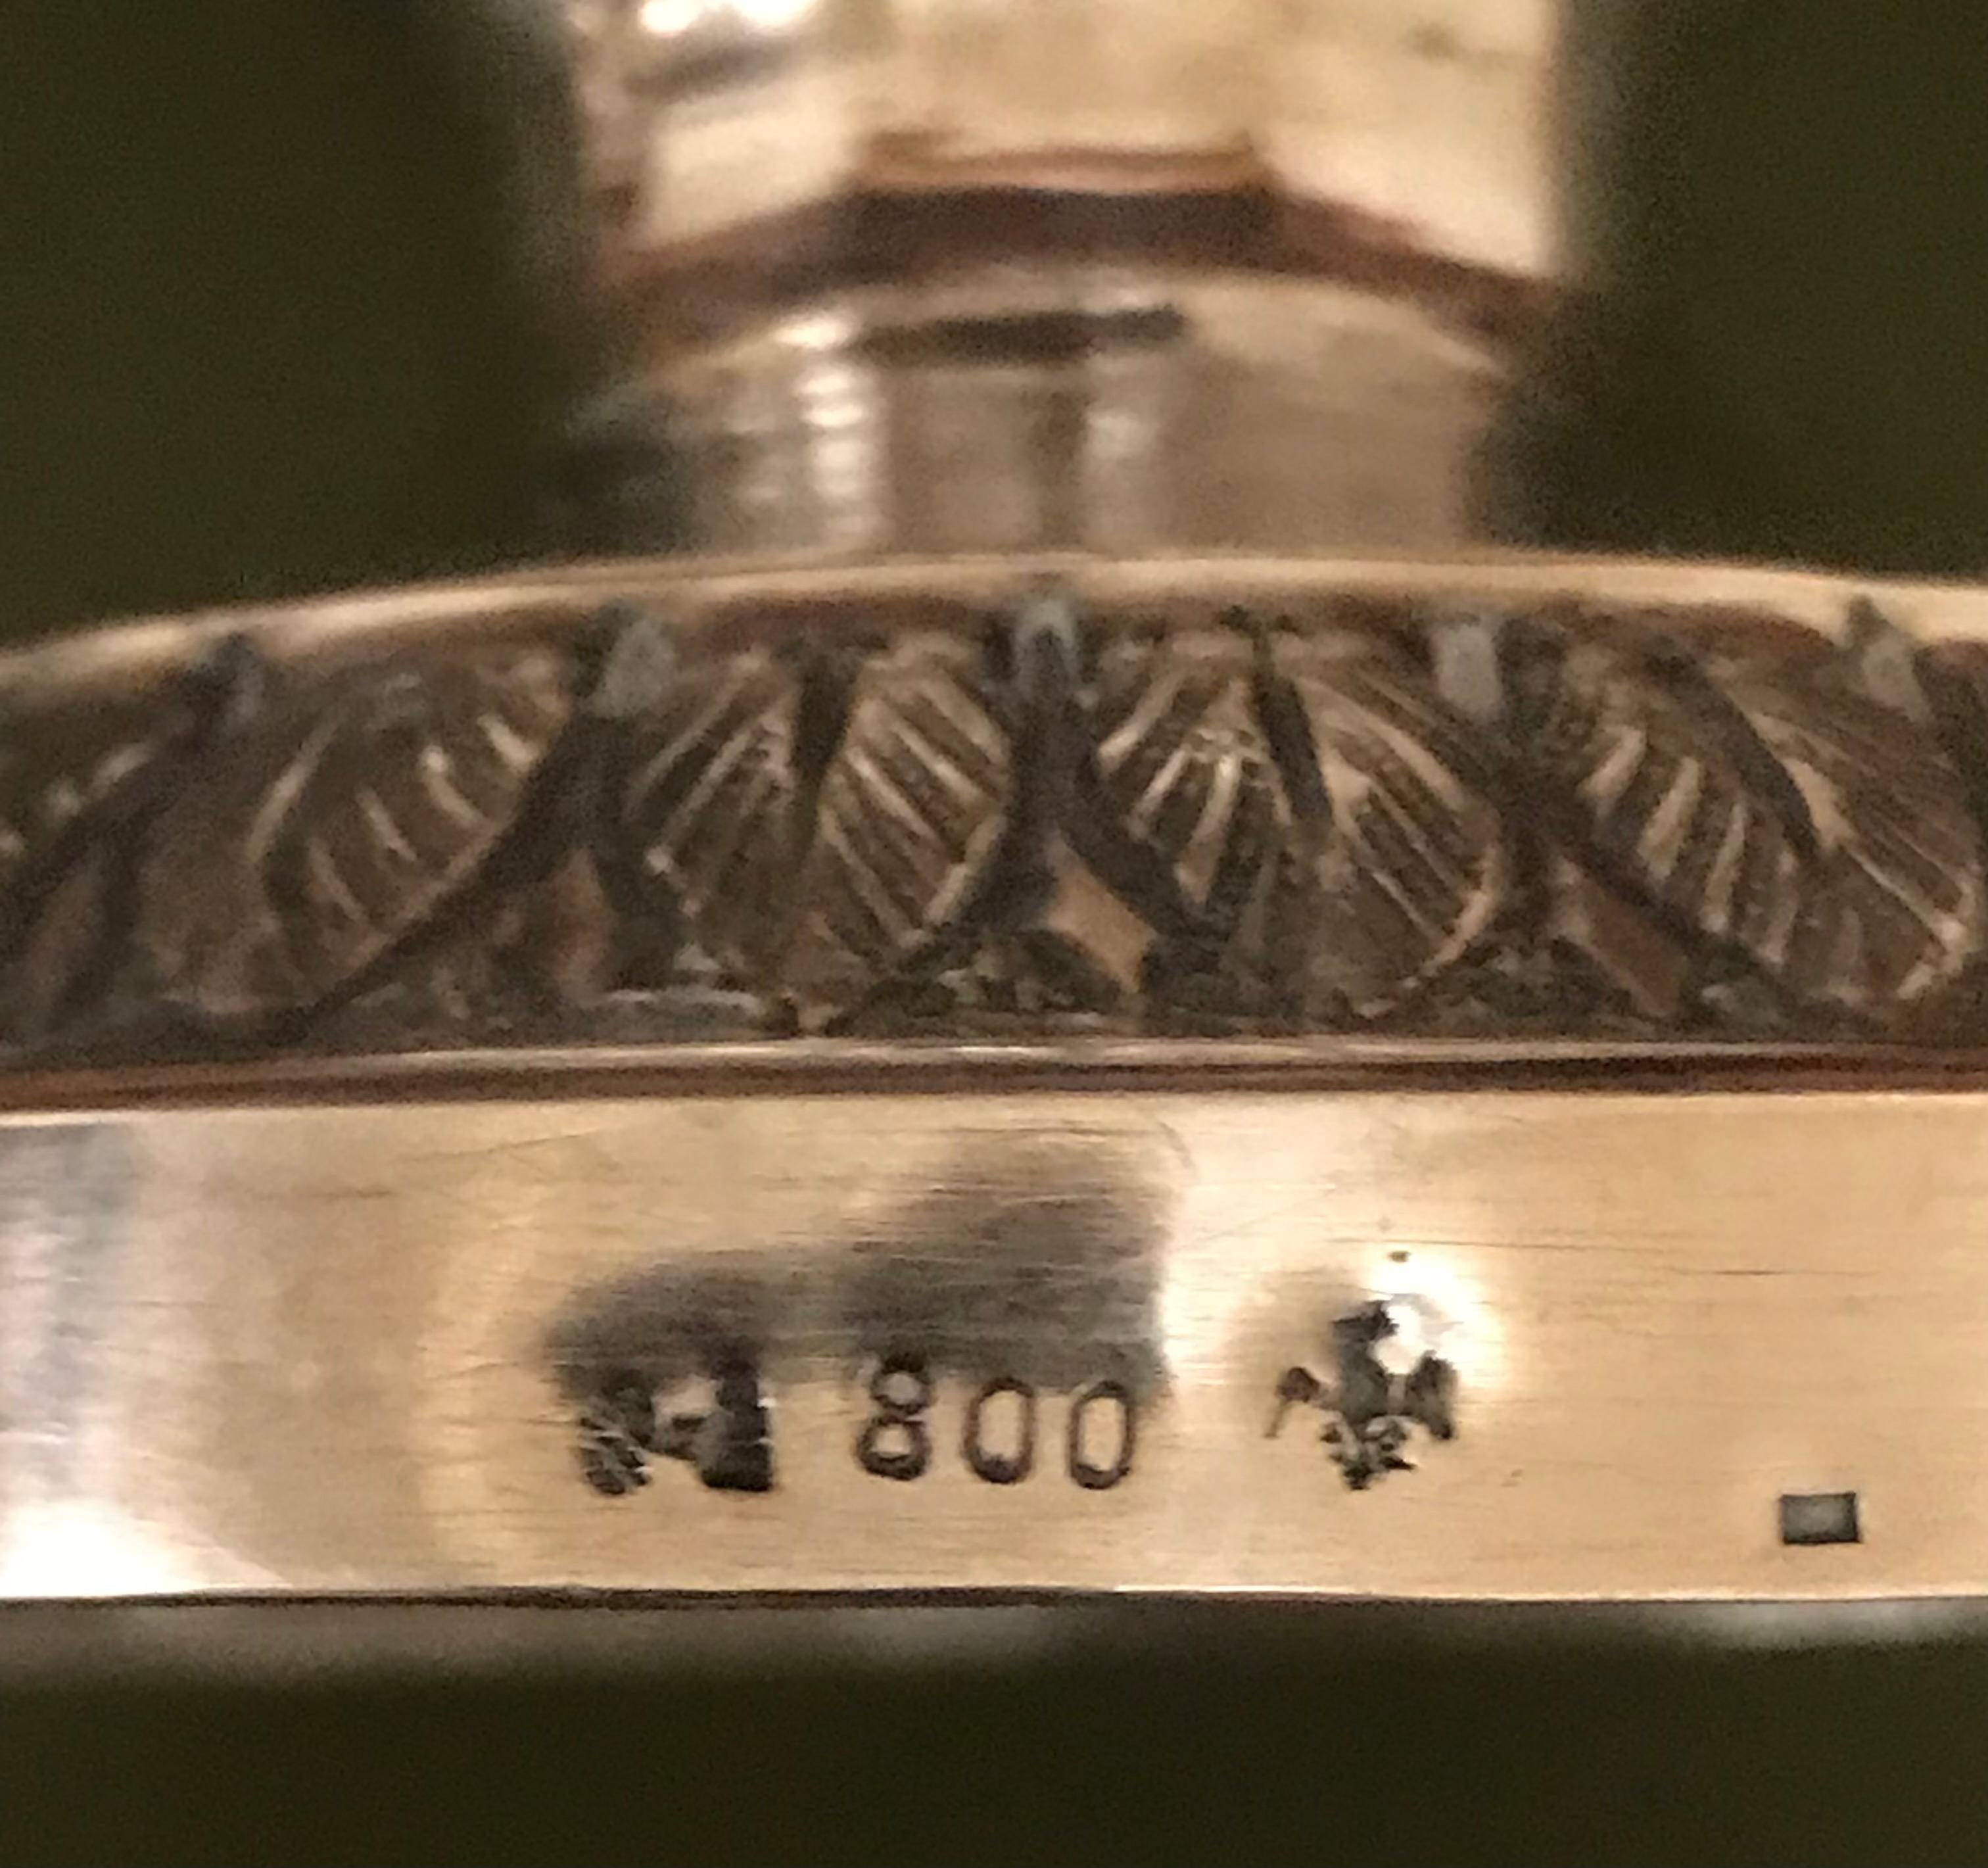 Deckelgefäß, Silber 800, verziert, 2 seitliche Handhaben, 19. Jh.

H 19 cm, Durchmesser 11 cm + Henkel